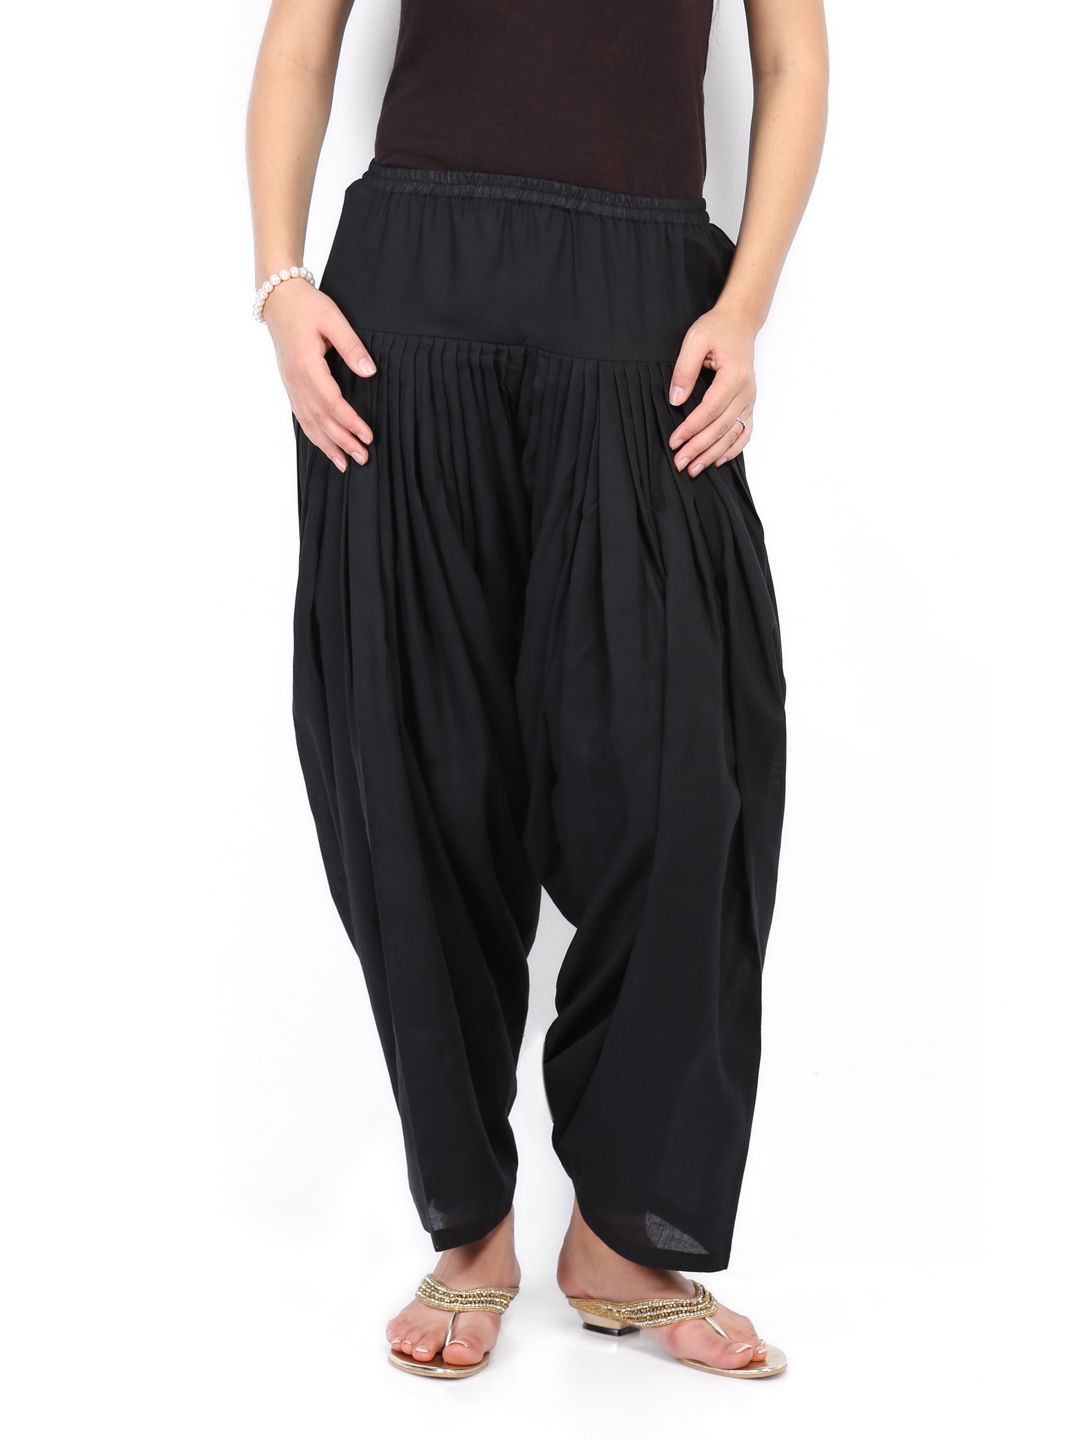 Buy Nikhaar Women Black Patiala Pants - 422 - Apparel for Women - 426358